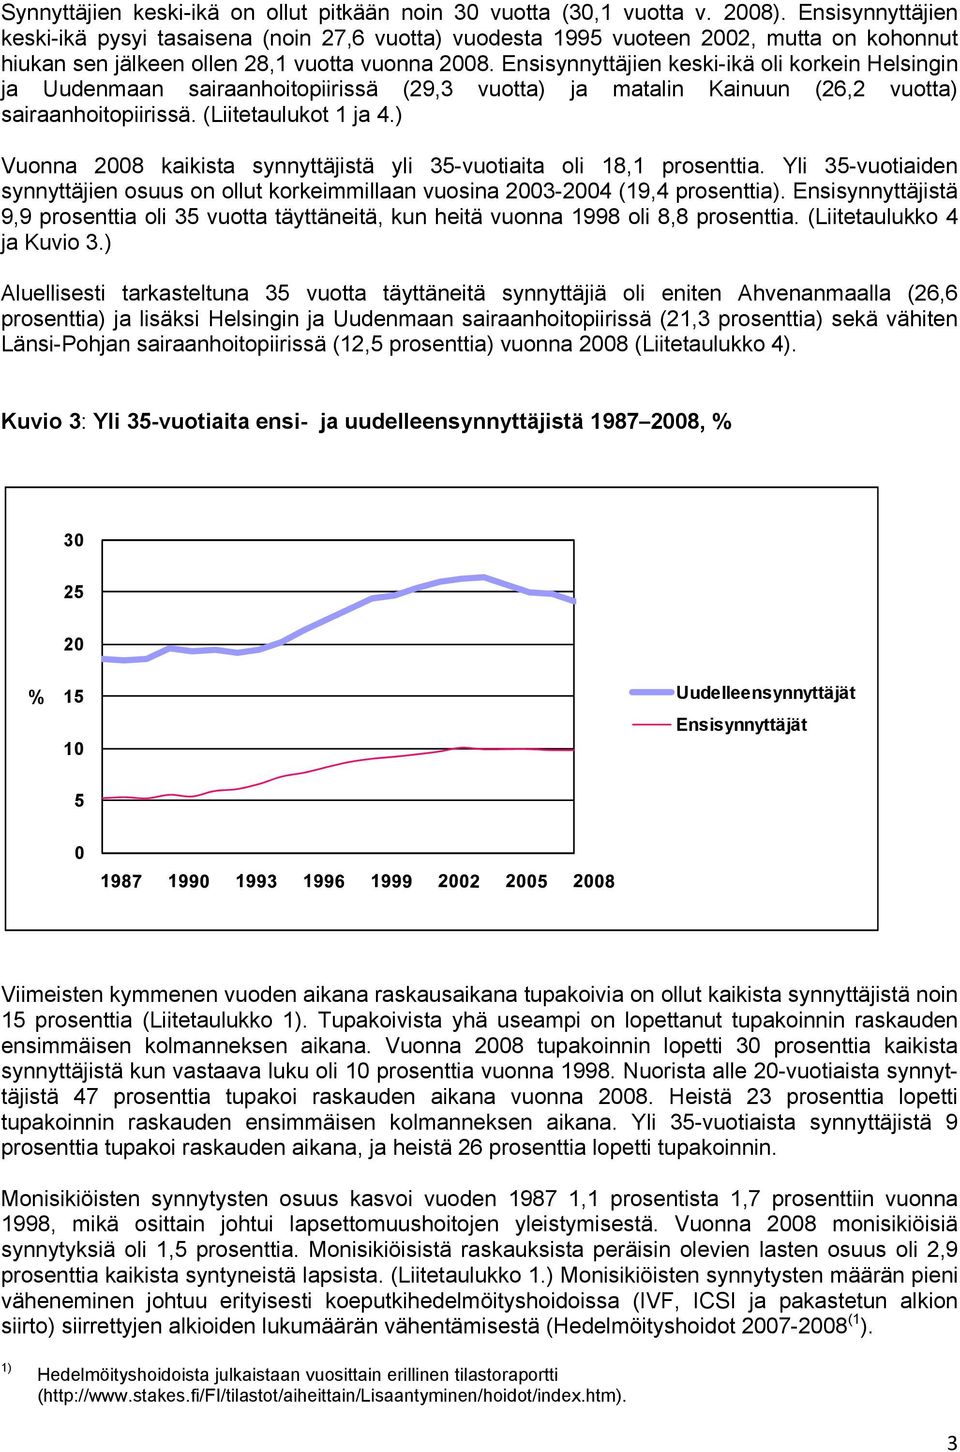 Ensisynnyttäjien keski-ikä oli korkein Helsingin ja Uudenmaan sairaanhoitopiirissä (29,3 vuotta) ja matalin Kainuun (26,2 vuotta) sairaanhoitopiirissä. (Liitetaulukot 1 ja 4.